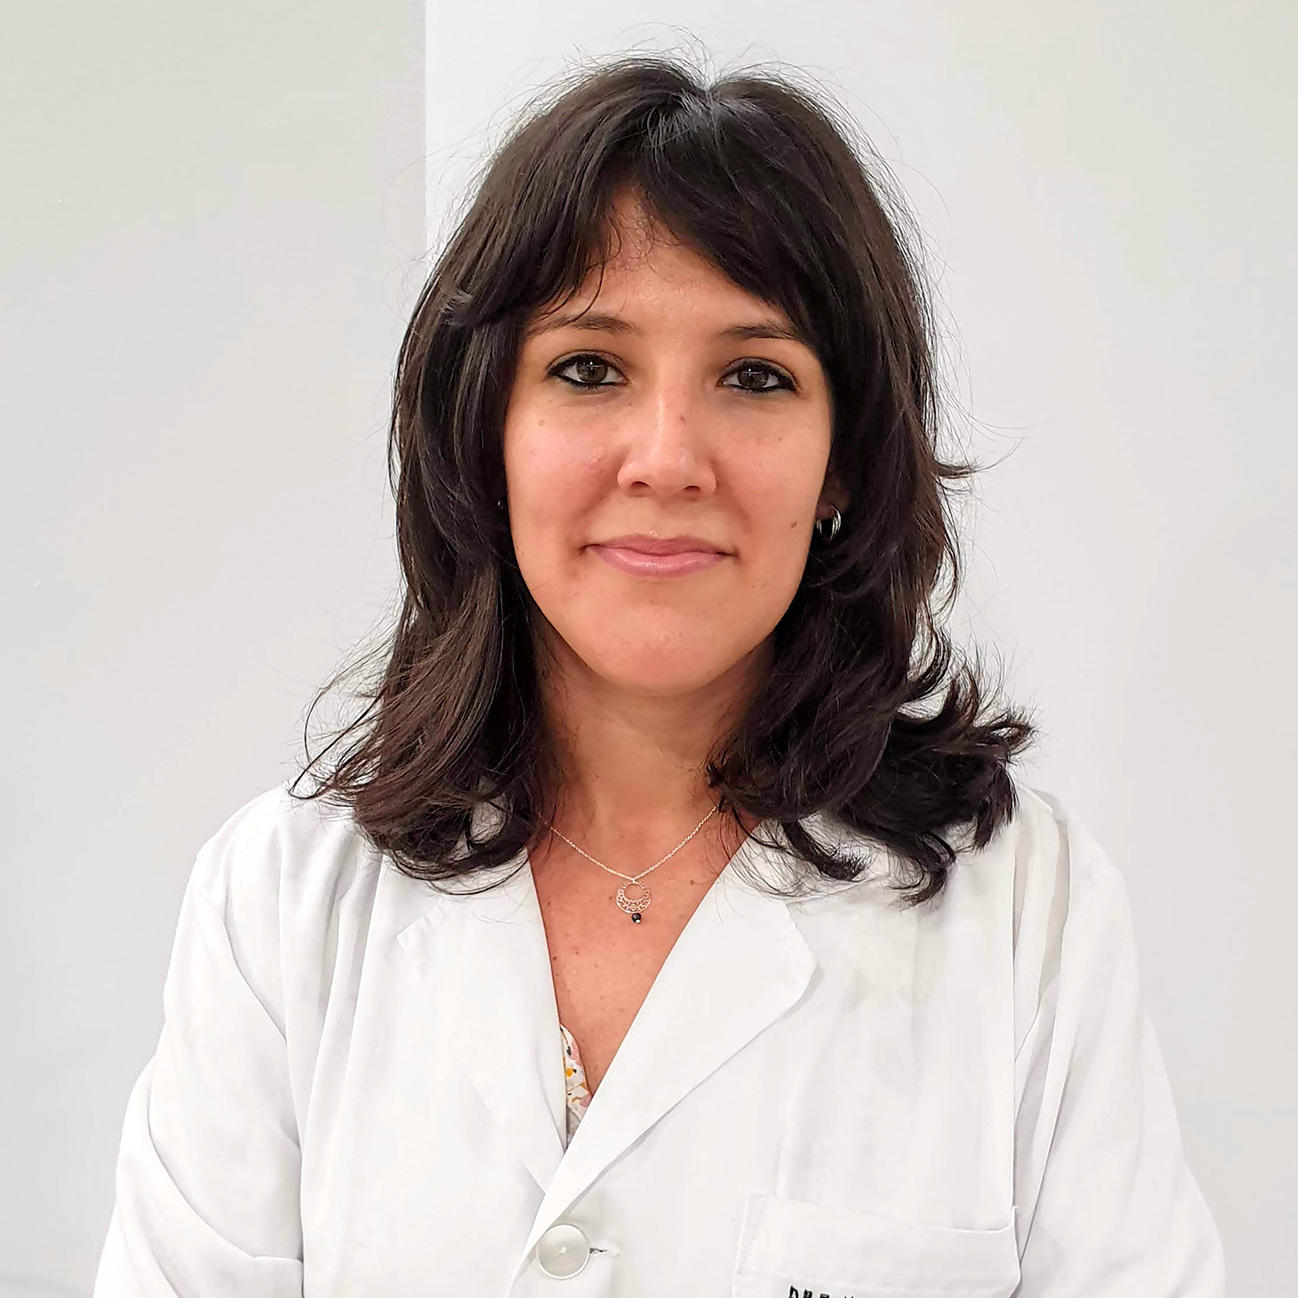 Alergias: Entrevista a la Dra. Leticia Herrero